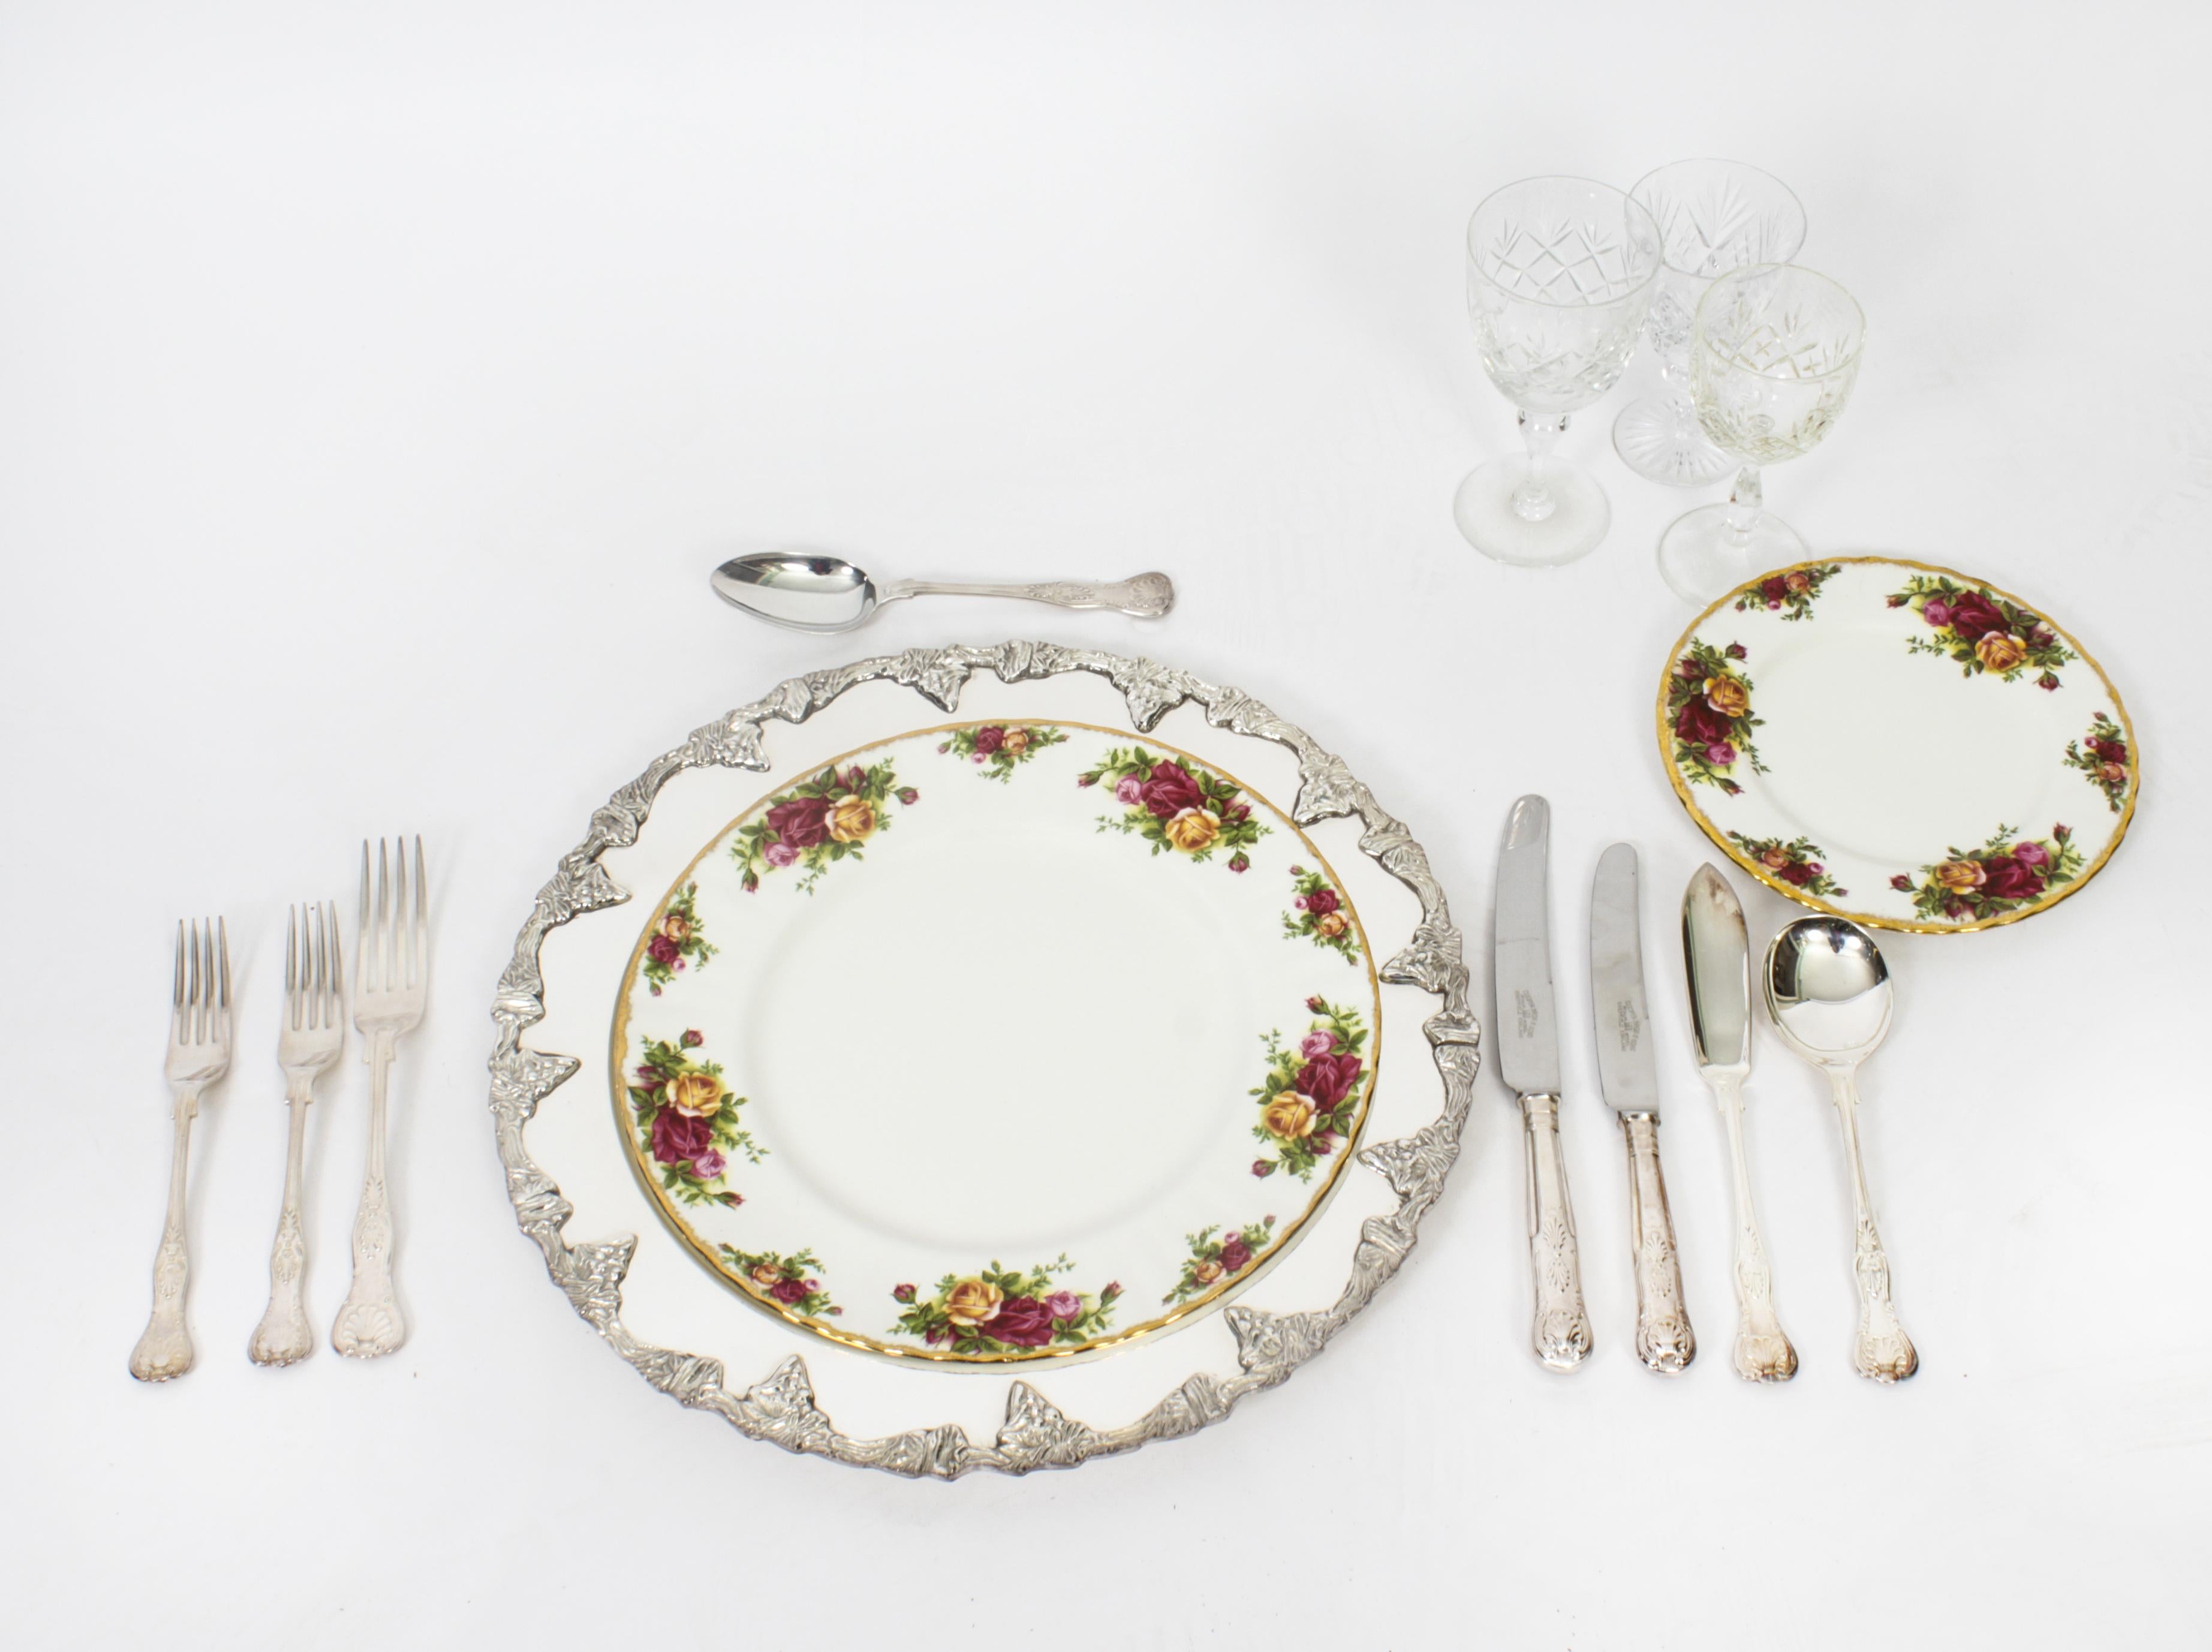 Il s'agit d'un ensemble exquis de quatorze sous-plats décoratifs plaqués argent, datant du milieu du 20e siècle.

Chaque assiette est magnifiquement  décorée de grappes de raisin et de vignes feuillues sur le pourtour.

Les plats sont vraiment